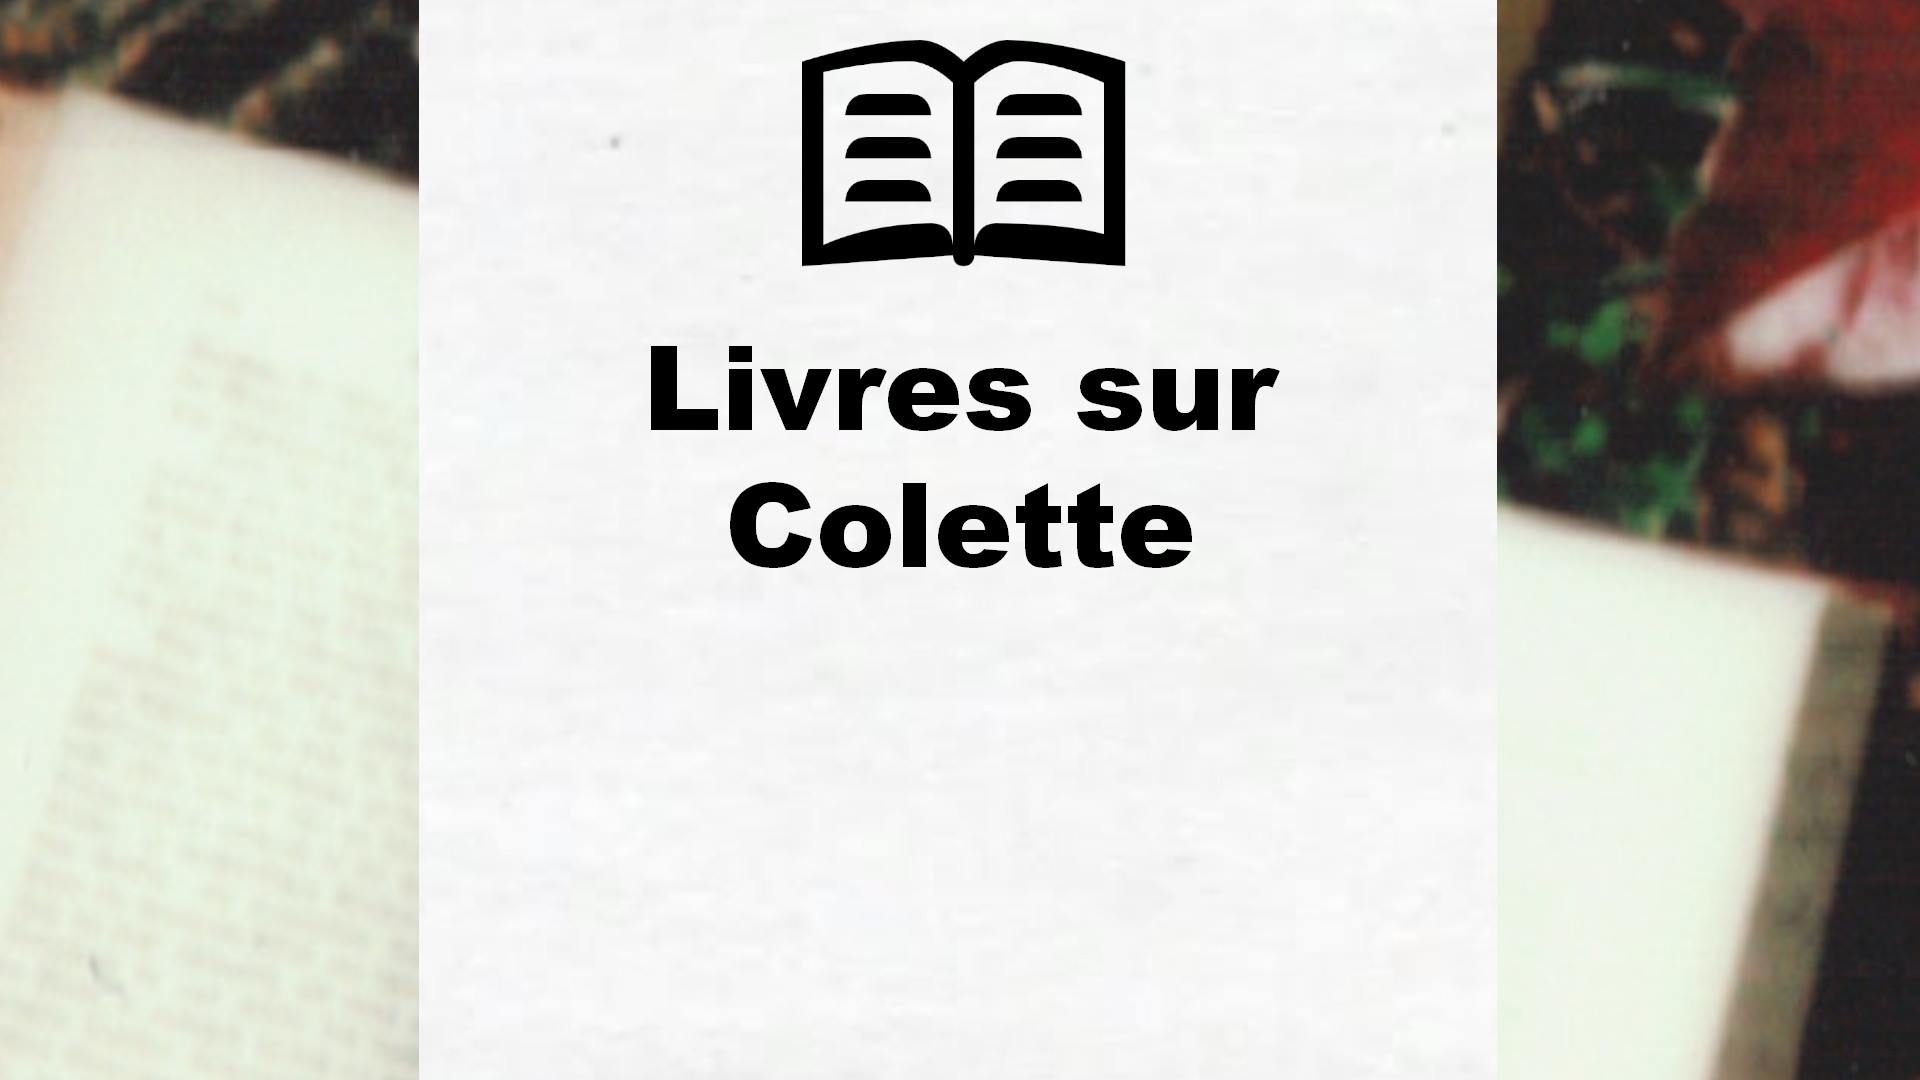 Livres sur Colette